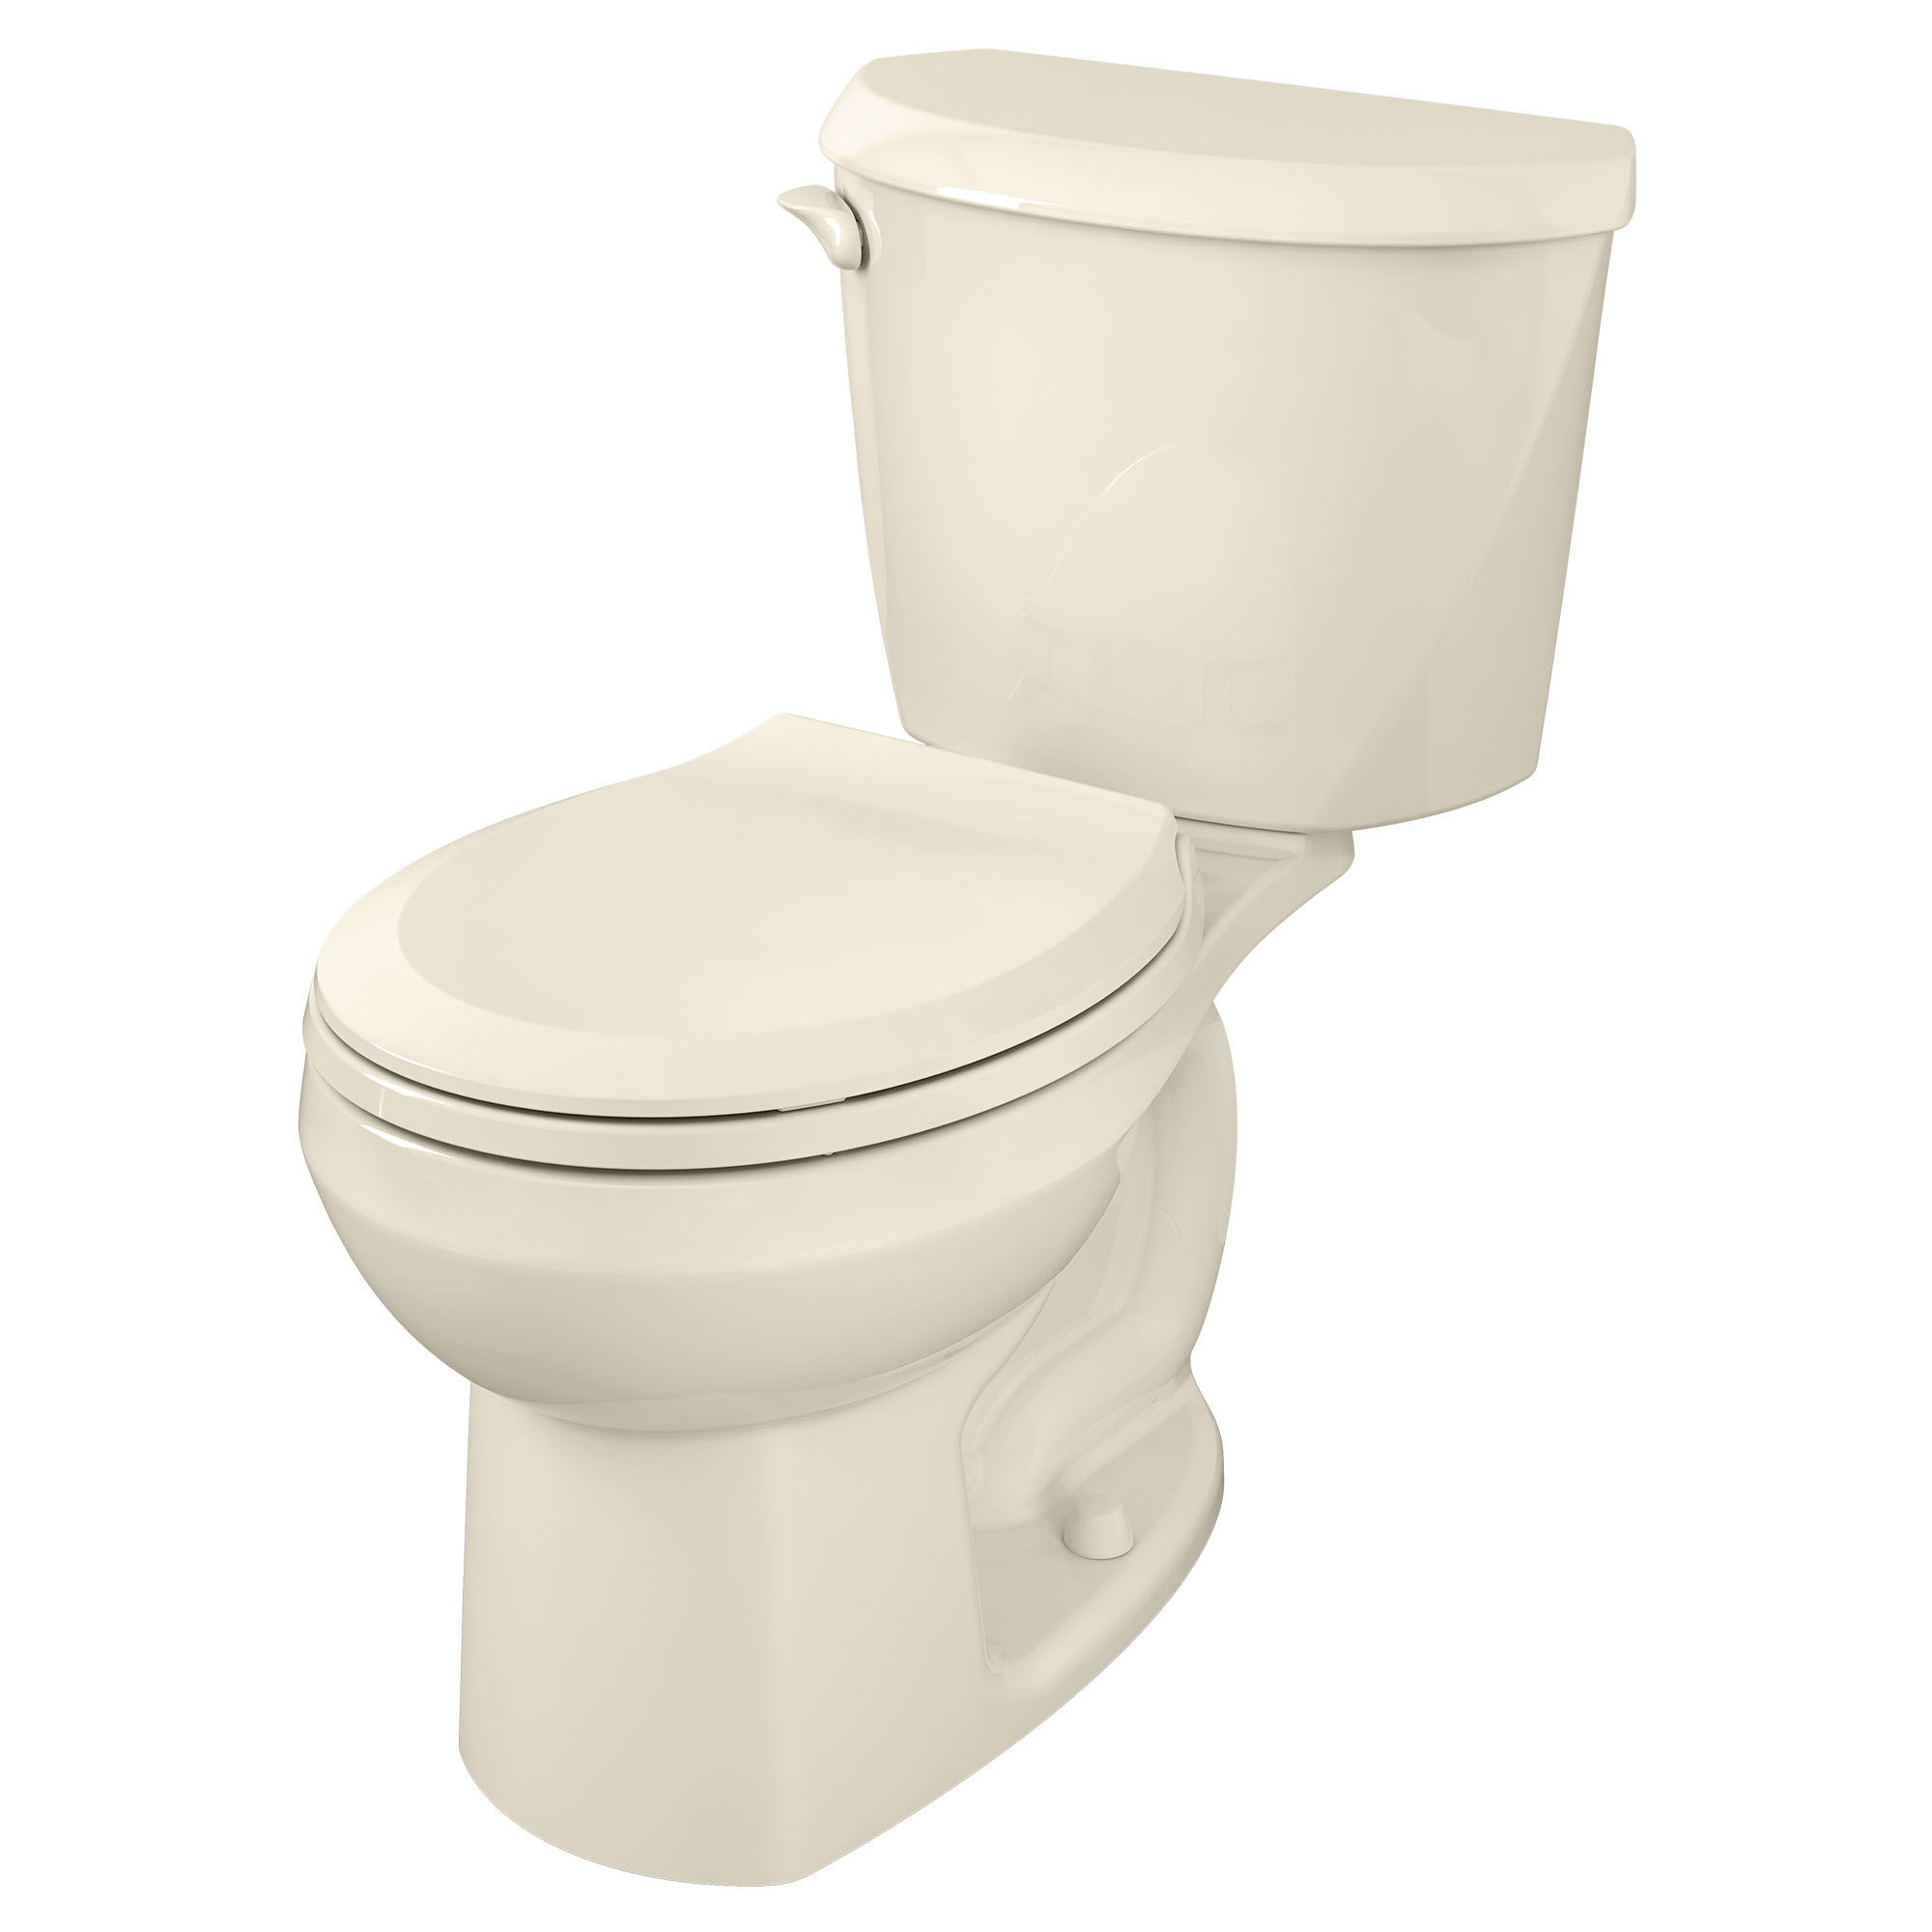 Toilette Colony, 2 pièces, 1,28 gpc/4,8 lpc, à cuvette au devant rond et hauteur régulière, sans siège